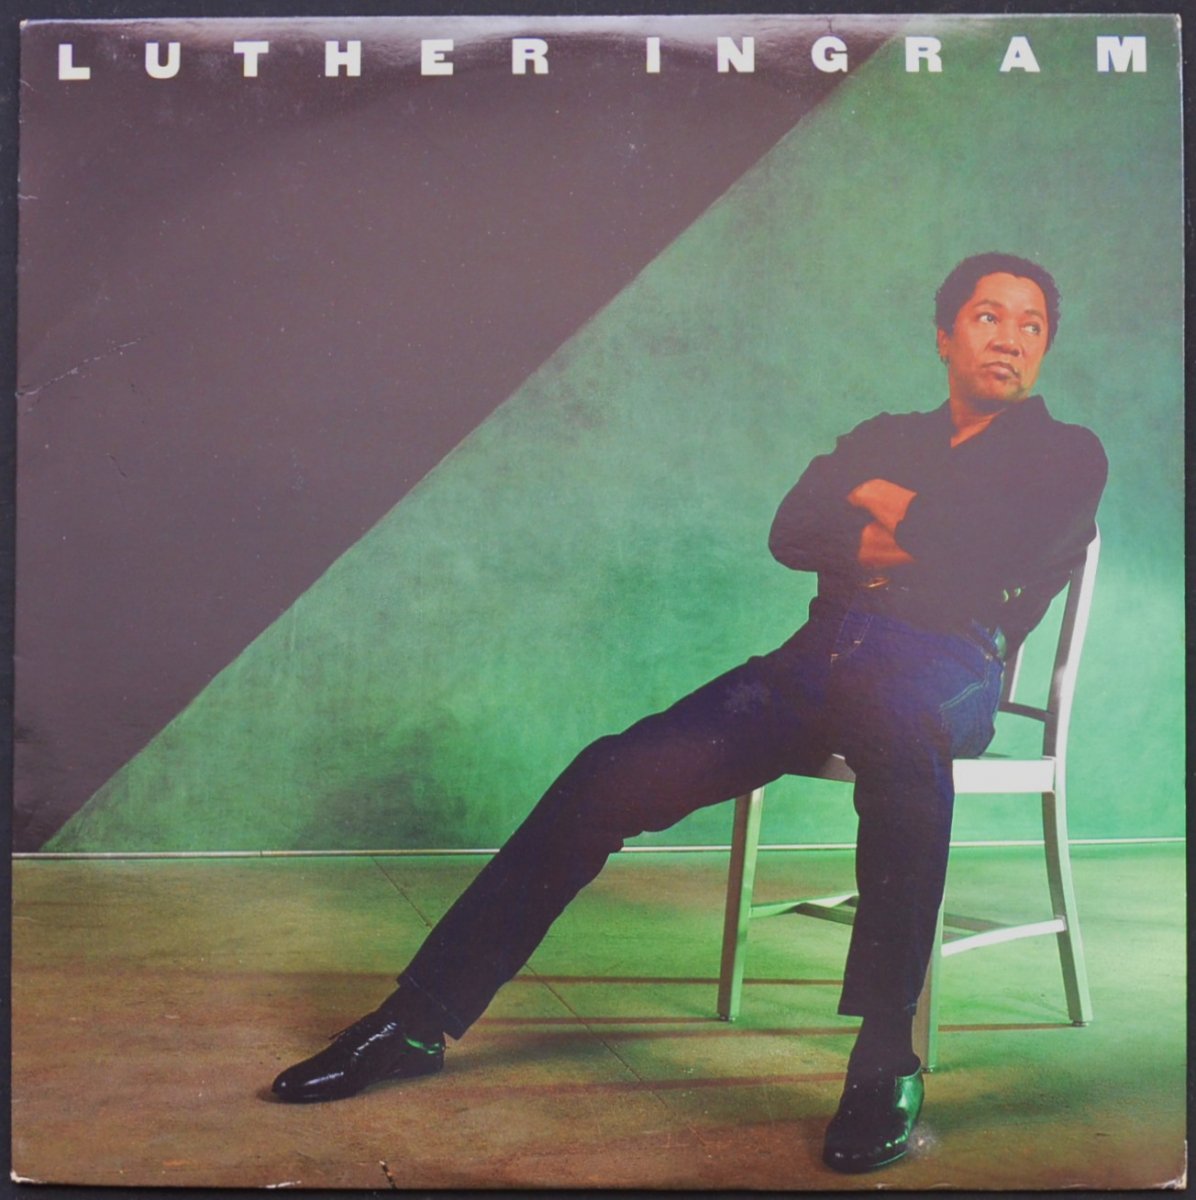 LUTHER INGRAM ‎/ LUTHER INGRAM (LP)